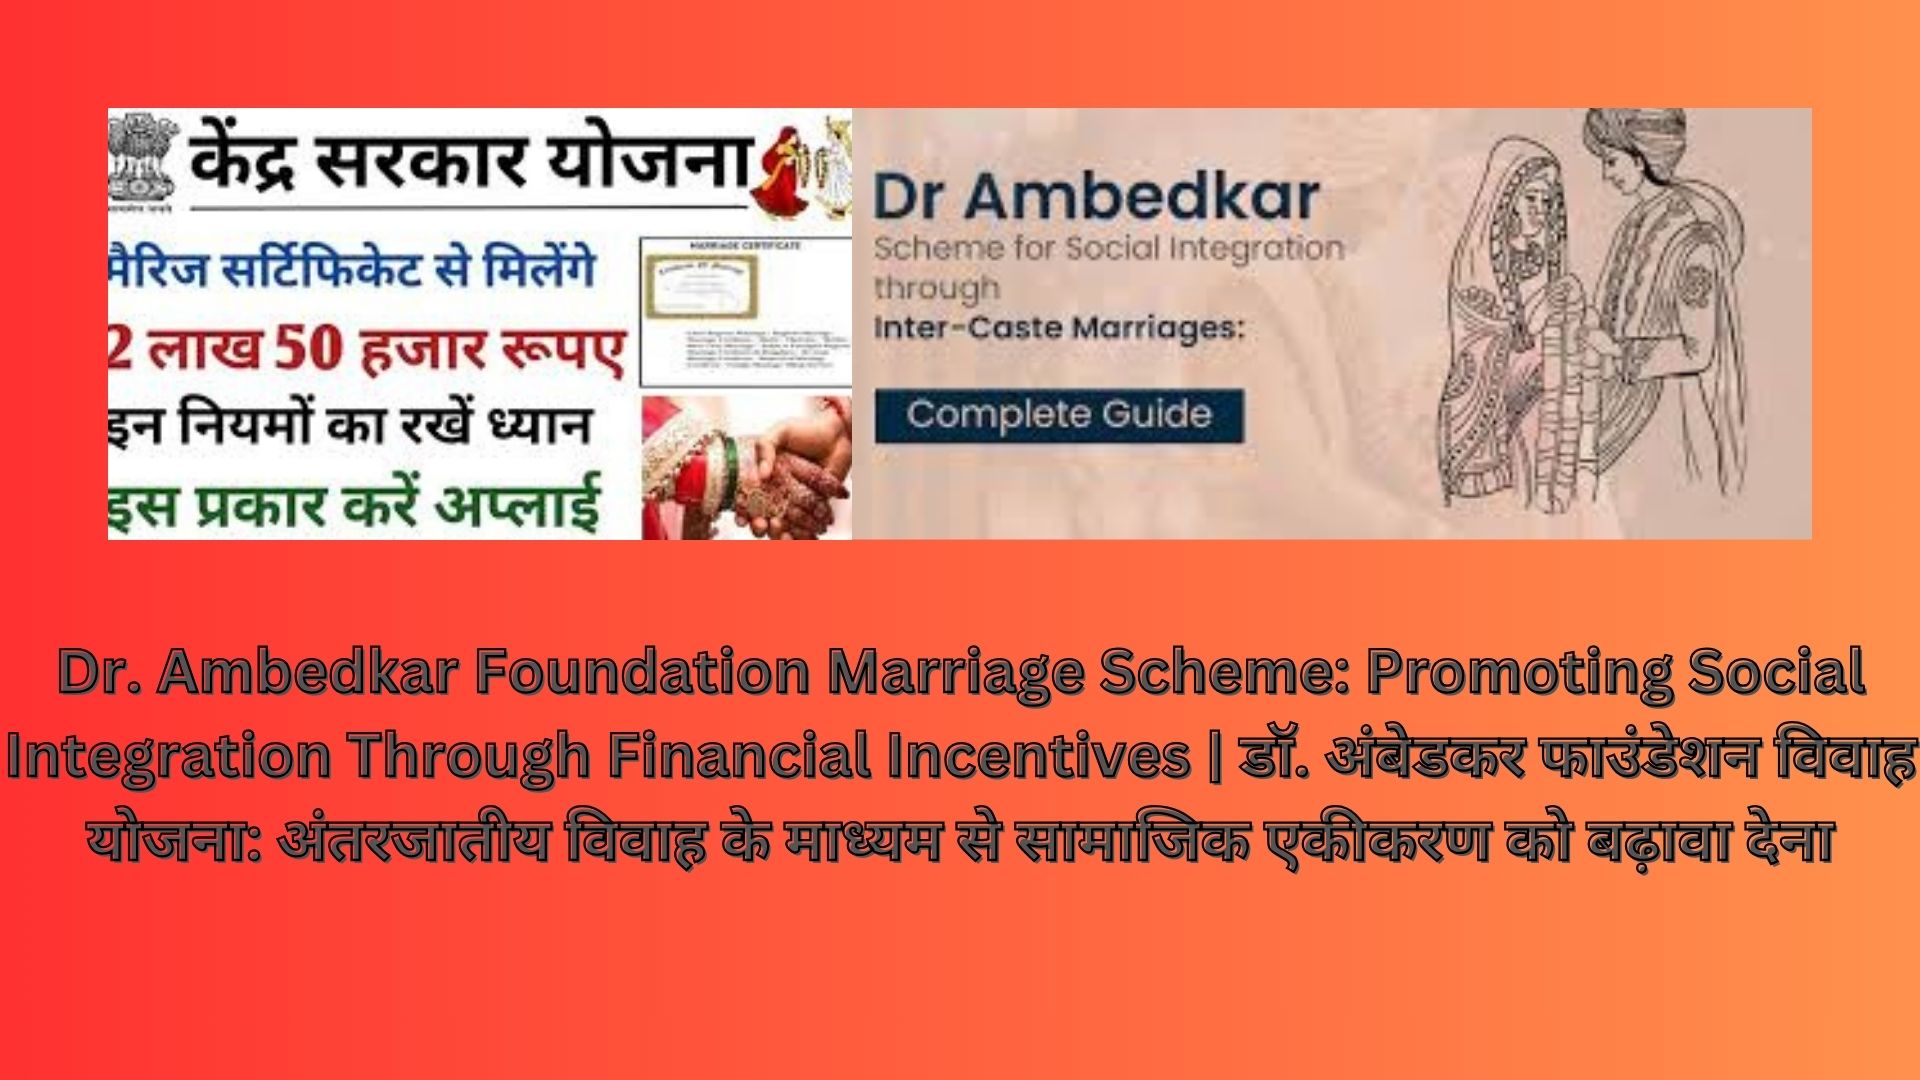 Dr. Ambedkar Foundation Marriage Scheme: Promoting Social Integration Through Financial Incentives | डॉ. अंबेडकर फाउंडेशन विवाह योजना: अंतरजातीय विवाह के माध्यम से सामाजिक एकीकरण को बढ़ावा देना